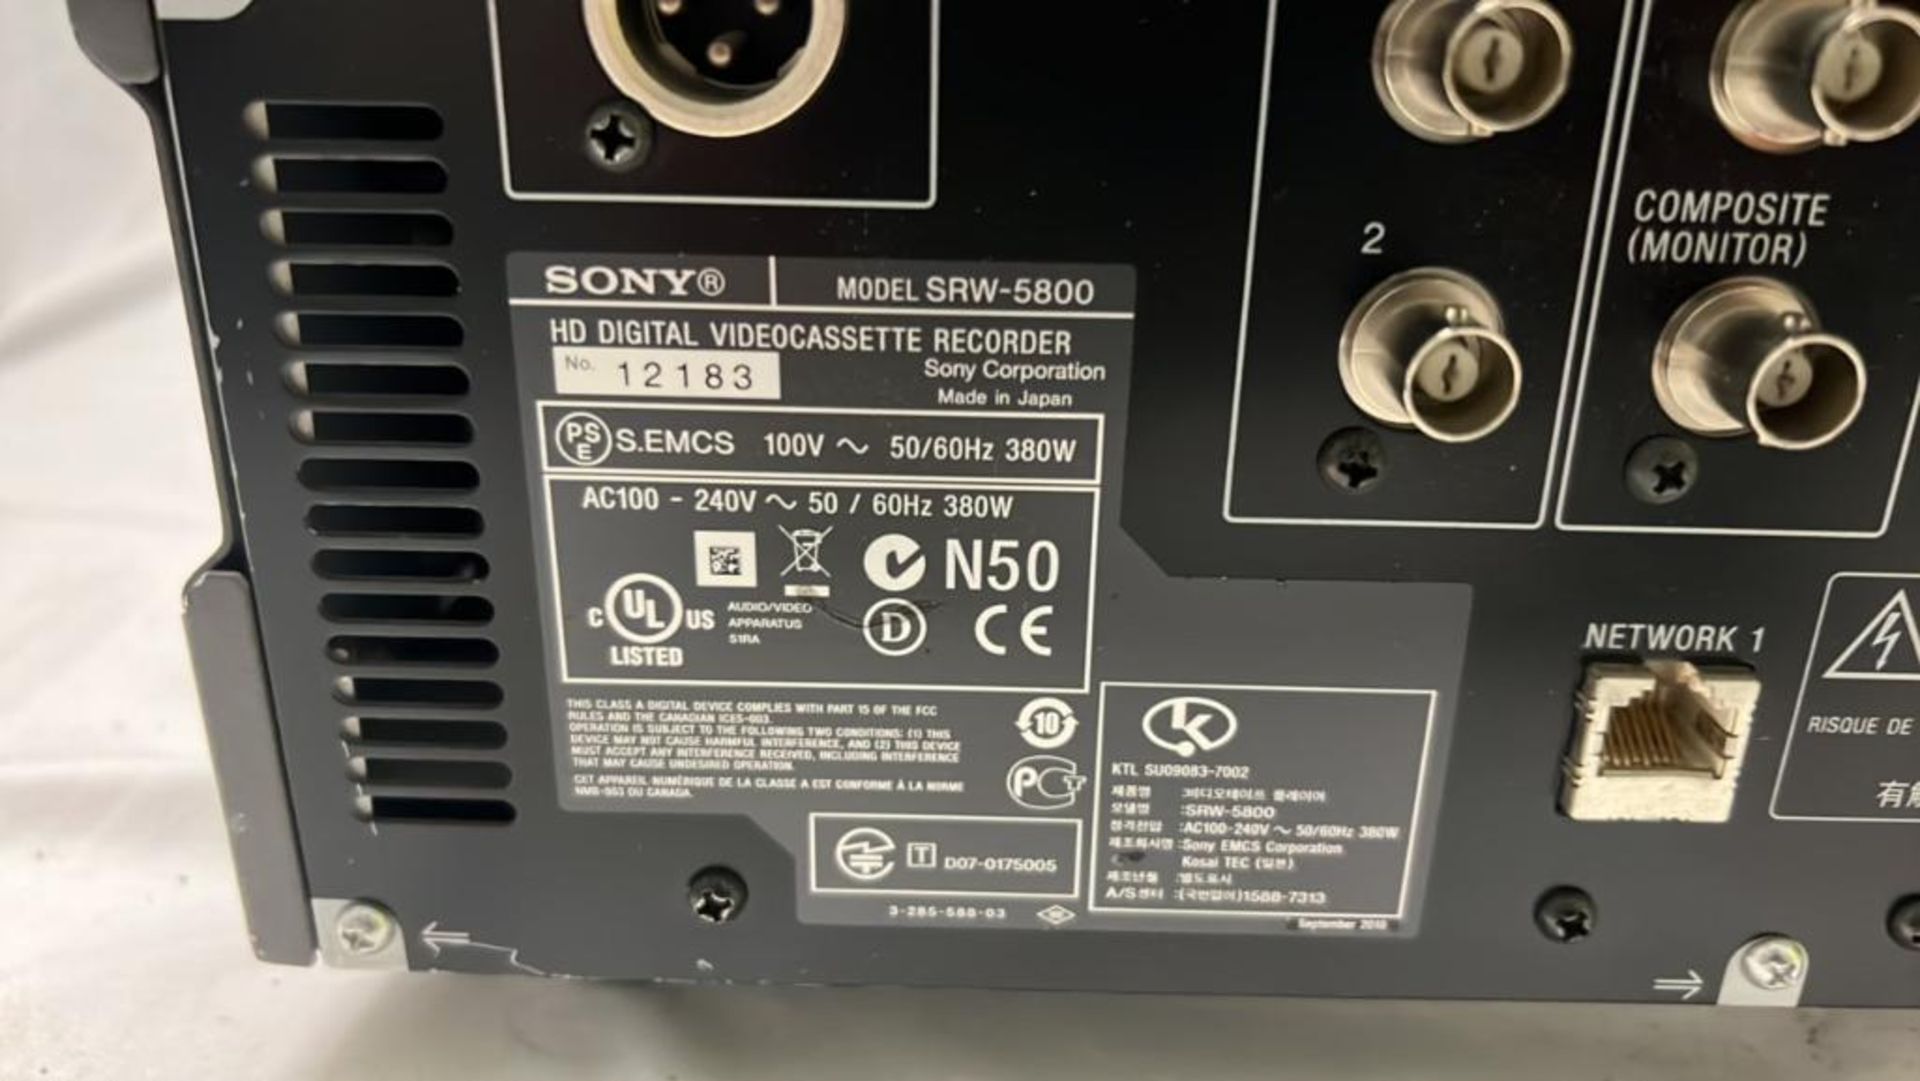 Sony SRW-5800/2 HDCAM Studio Recorder with flight case SN: 12183 - Image 3 of 3